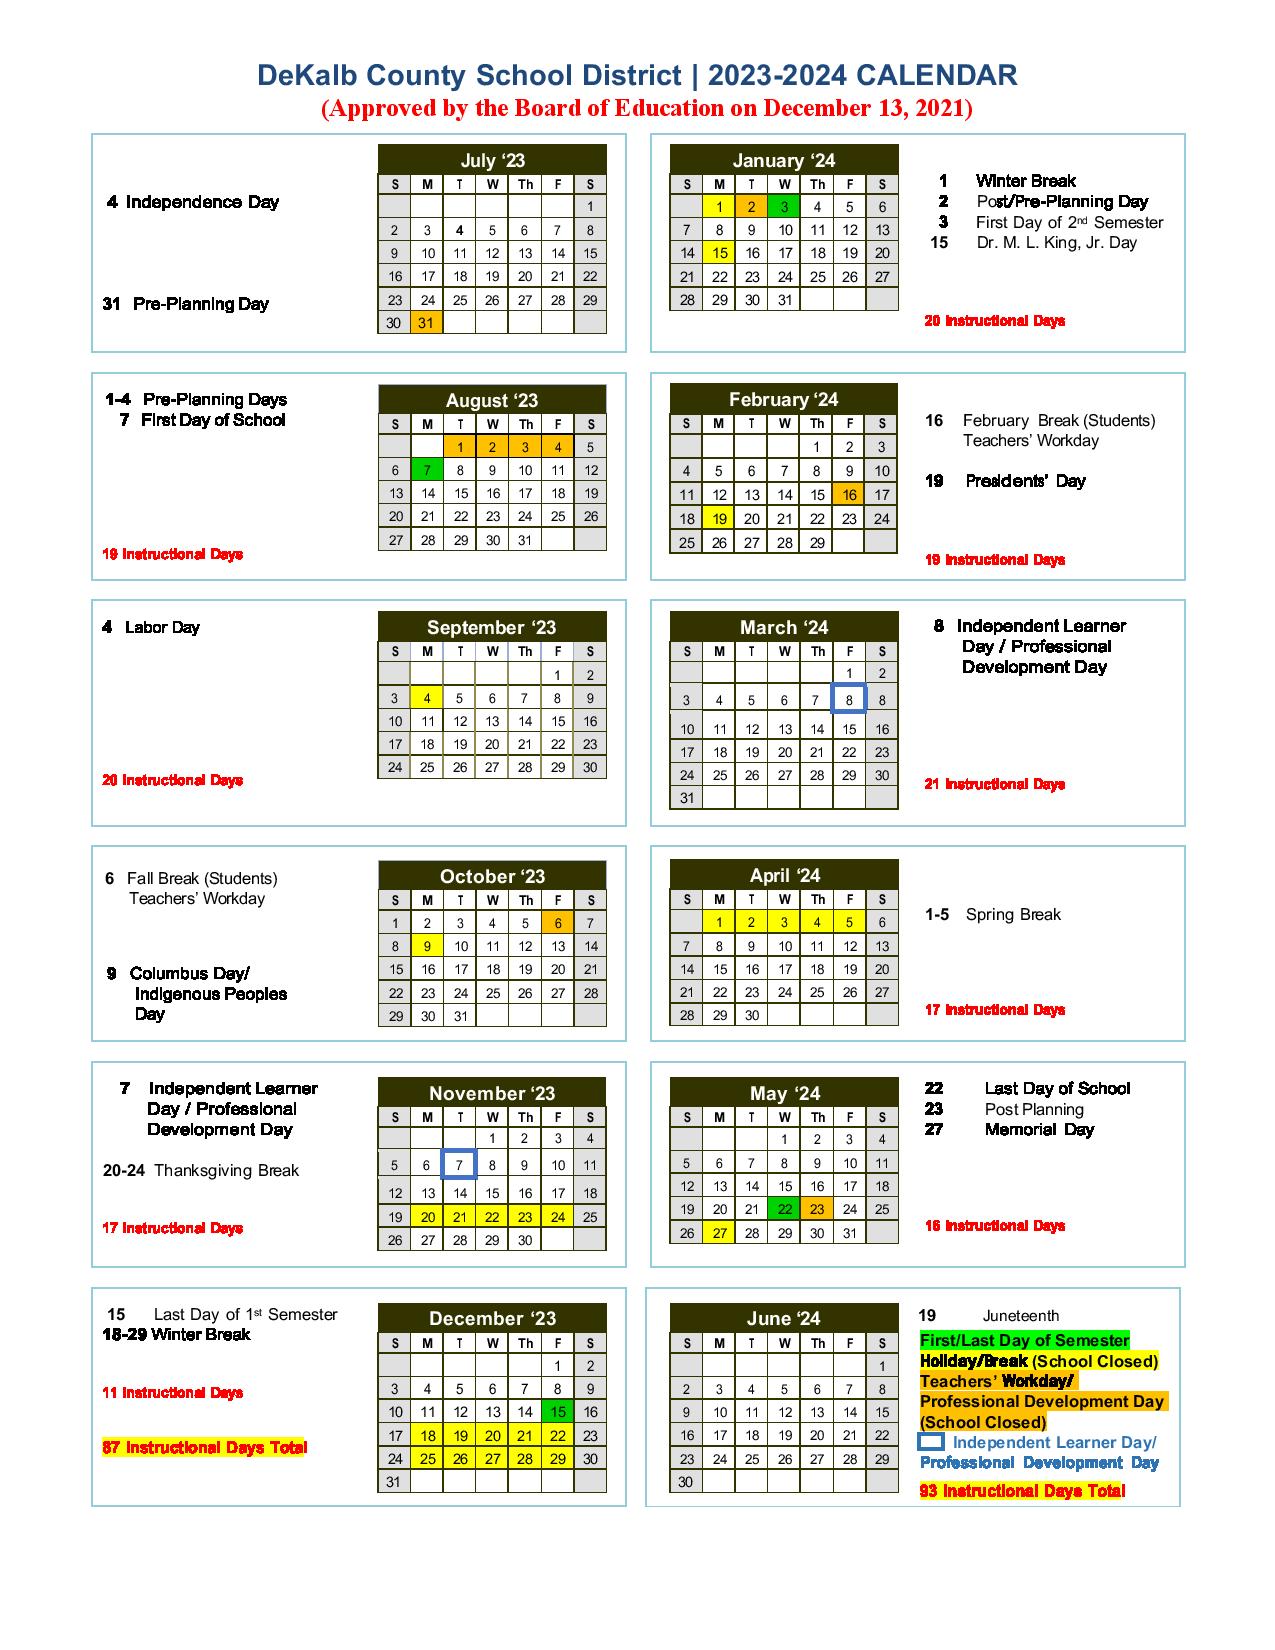 dekalb-county-school-district-calendar-2023-2024